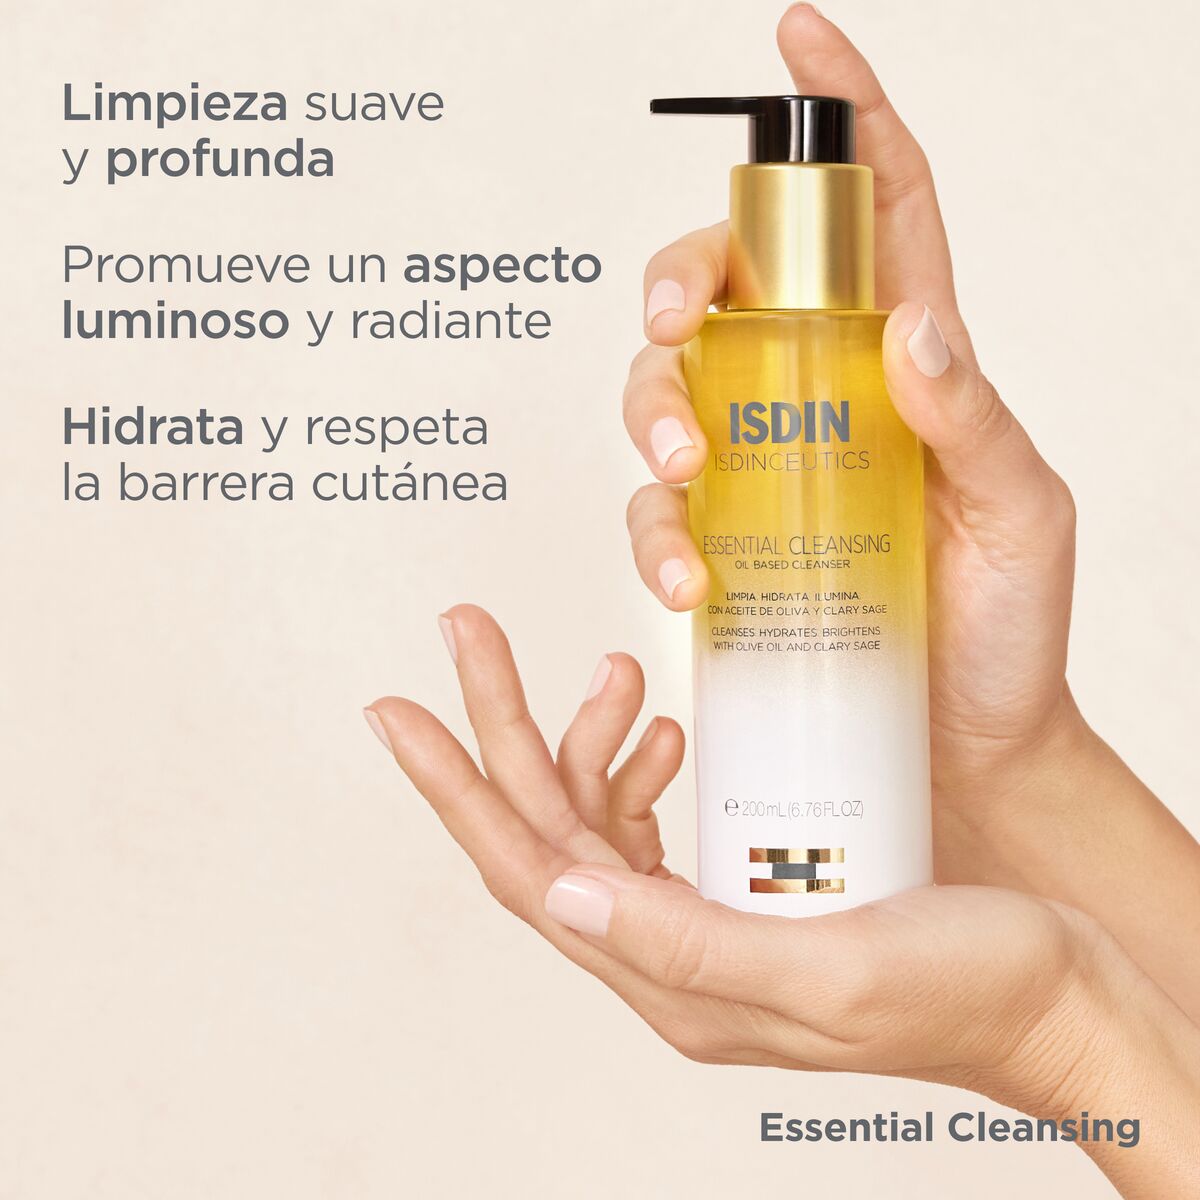 Comprar Isdinceutics essential cleansing 200 ml de aceite Isdin